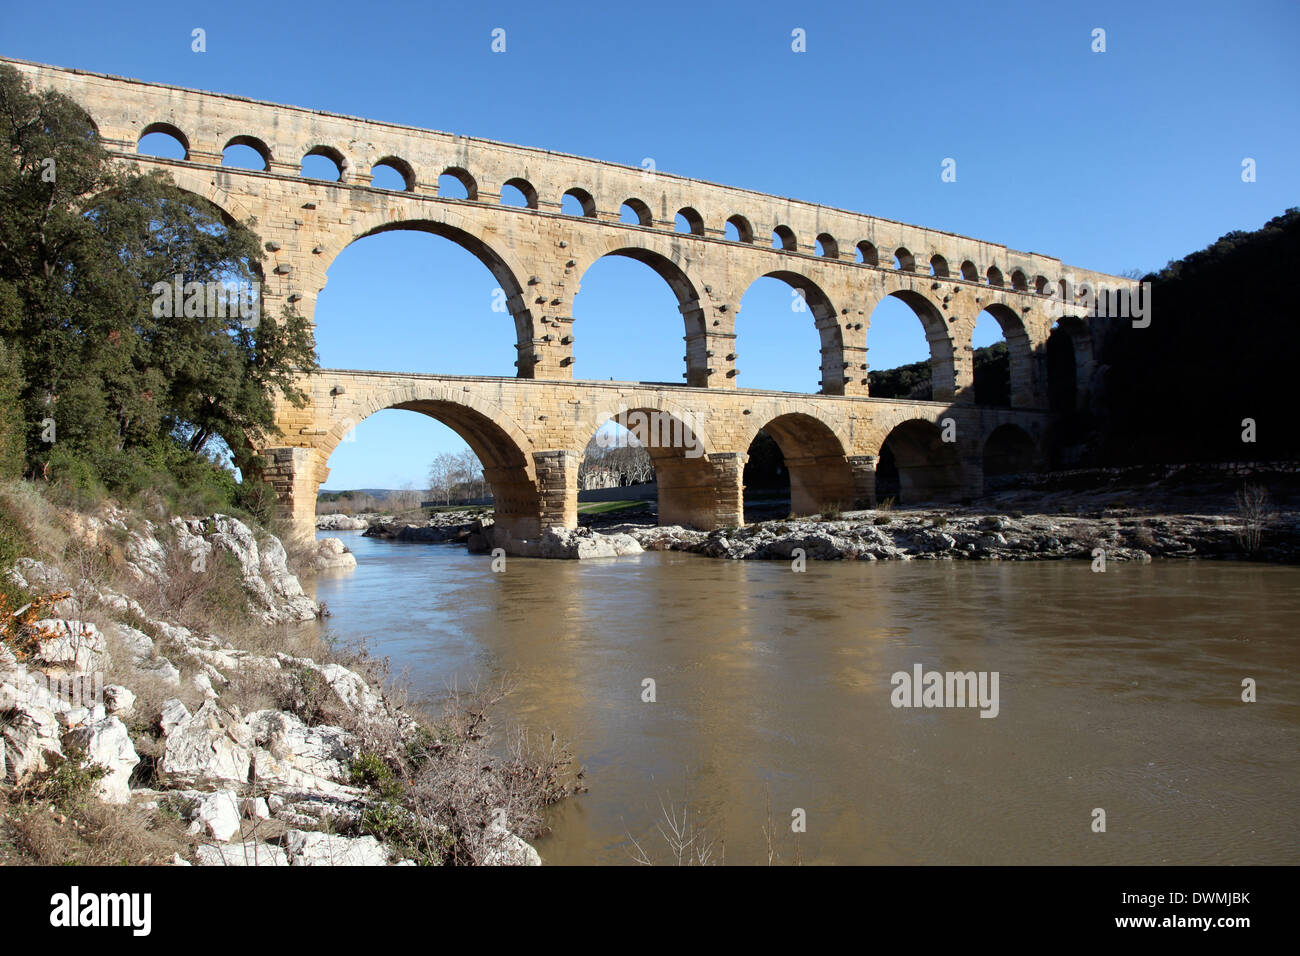 Aqueduc romain du Pont du Gard, Site du patrimoine mondial de l'UNESCO, sur le Gardon, Gard, Languedoc-Roussillon, France, Europe Banque D'Images